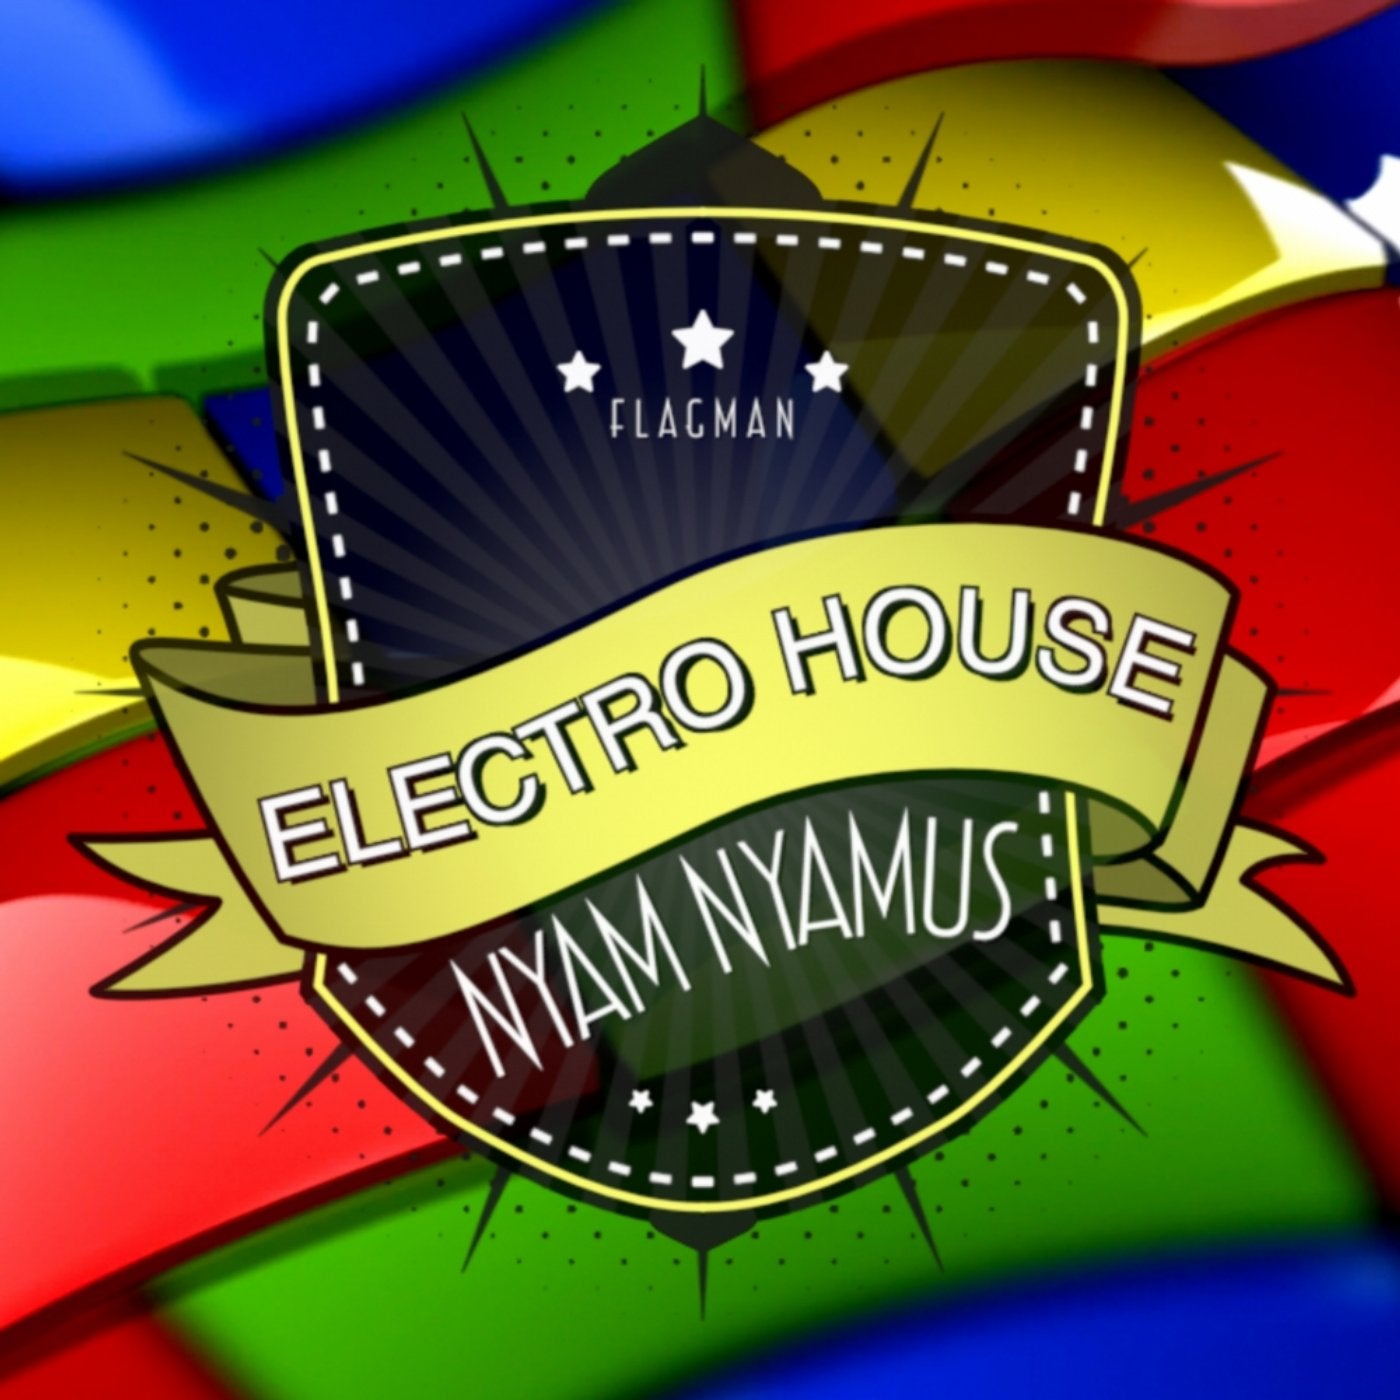 Electro House Nyam Nyamus